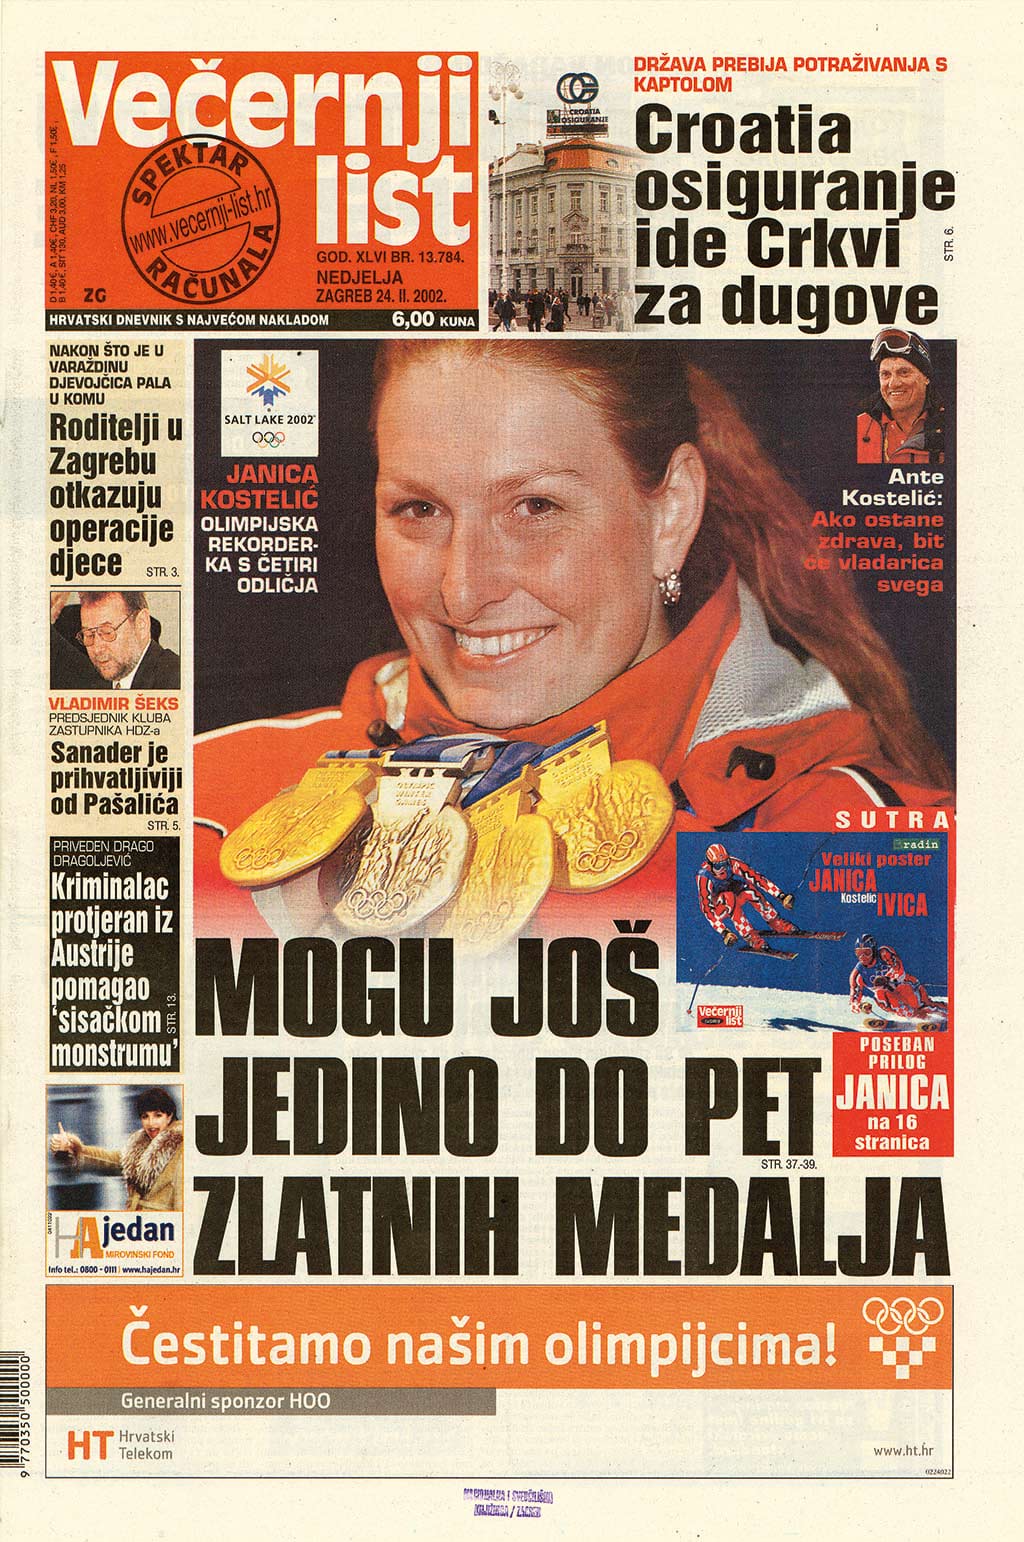 2003 Titelblatt Večernji List